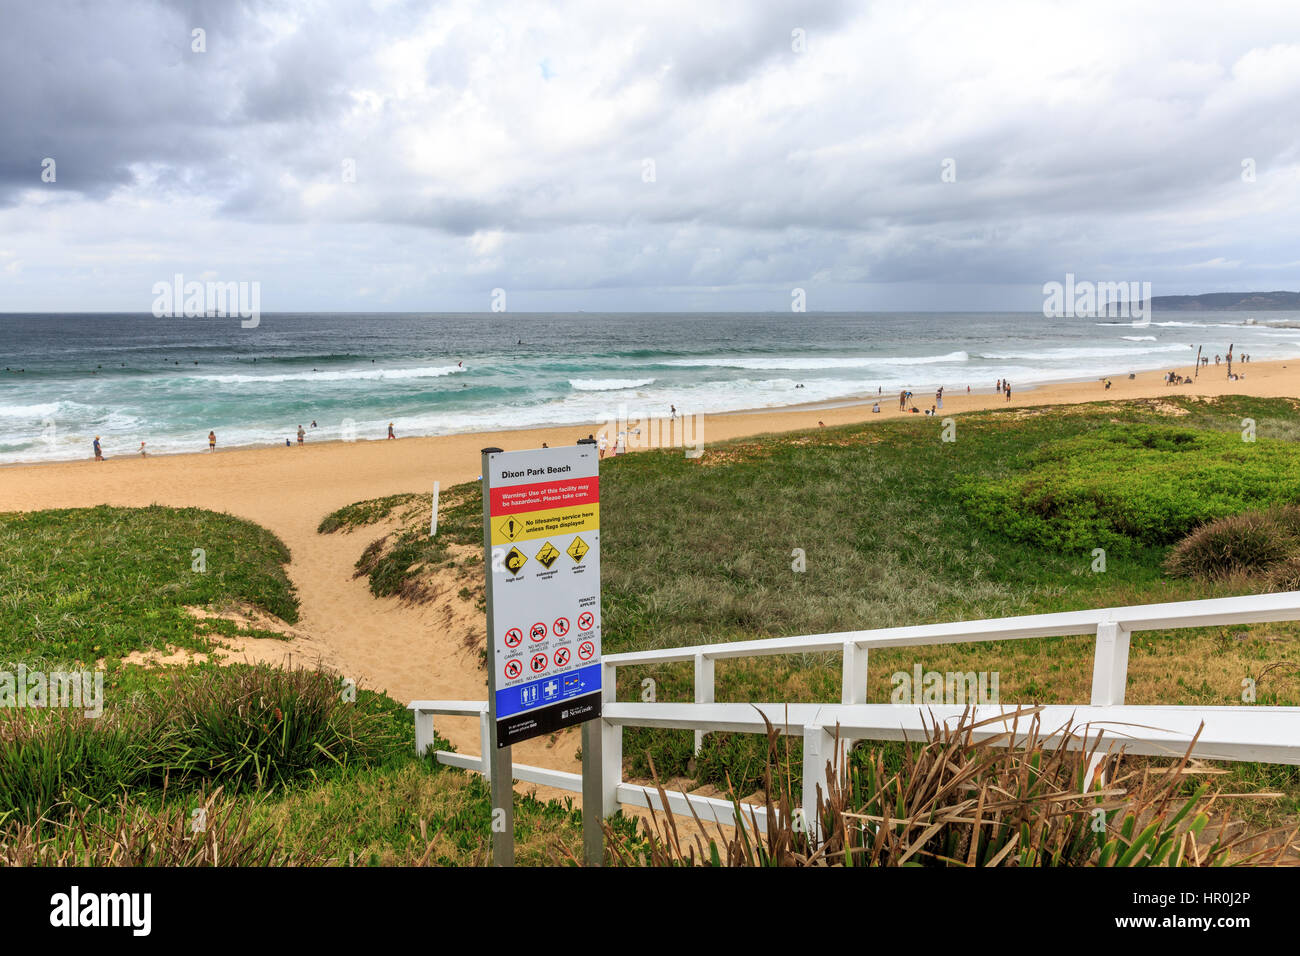 Dixon Park Beach à Newcastle, la deuxième plus grande ville de Nouvelle Galles du Sud, Australie Banque D'Images